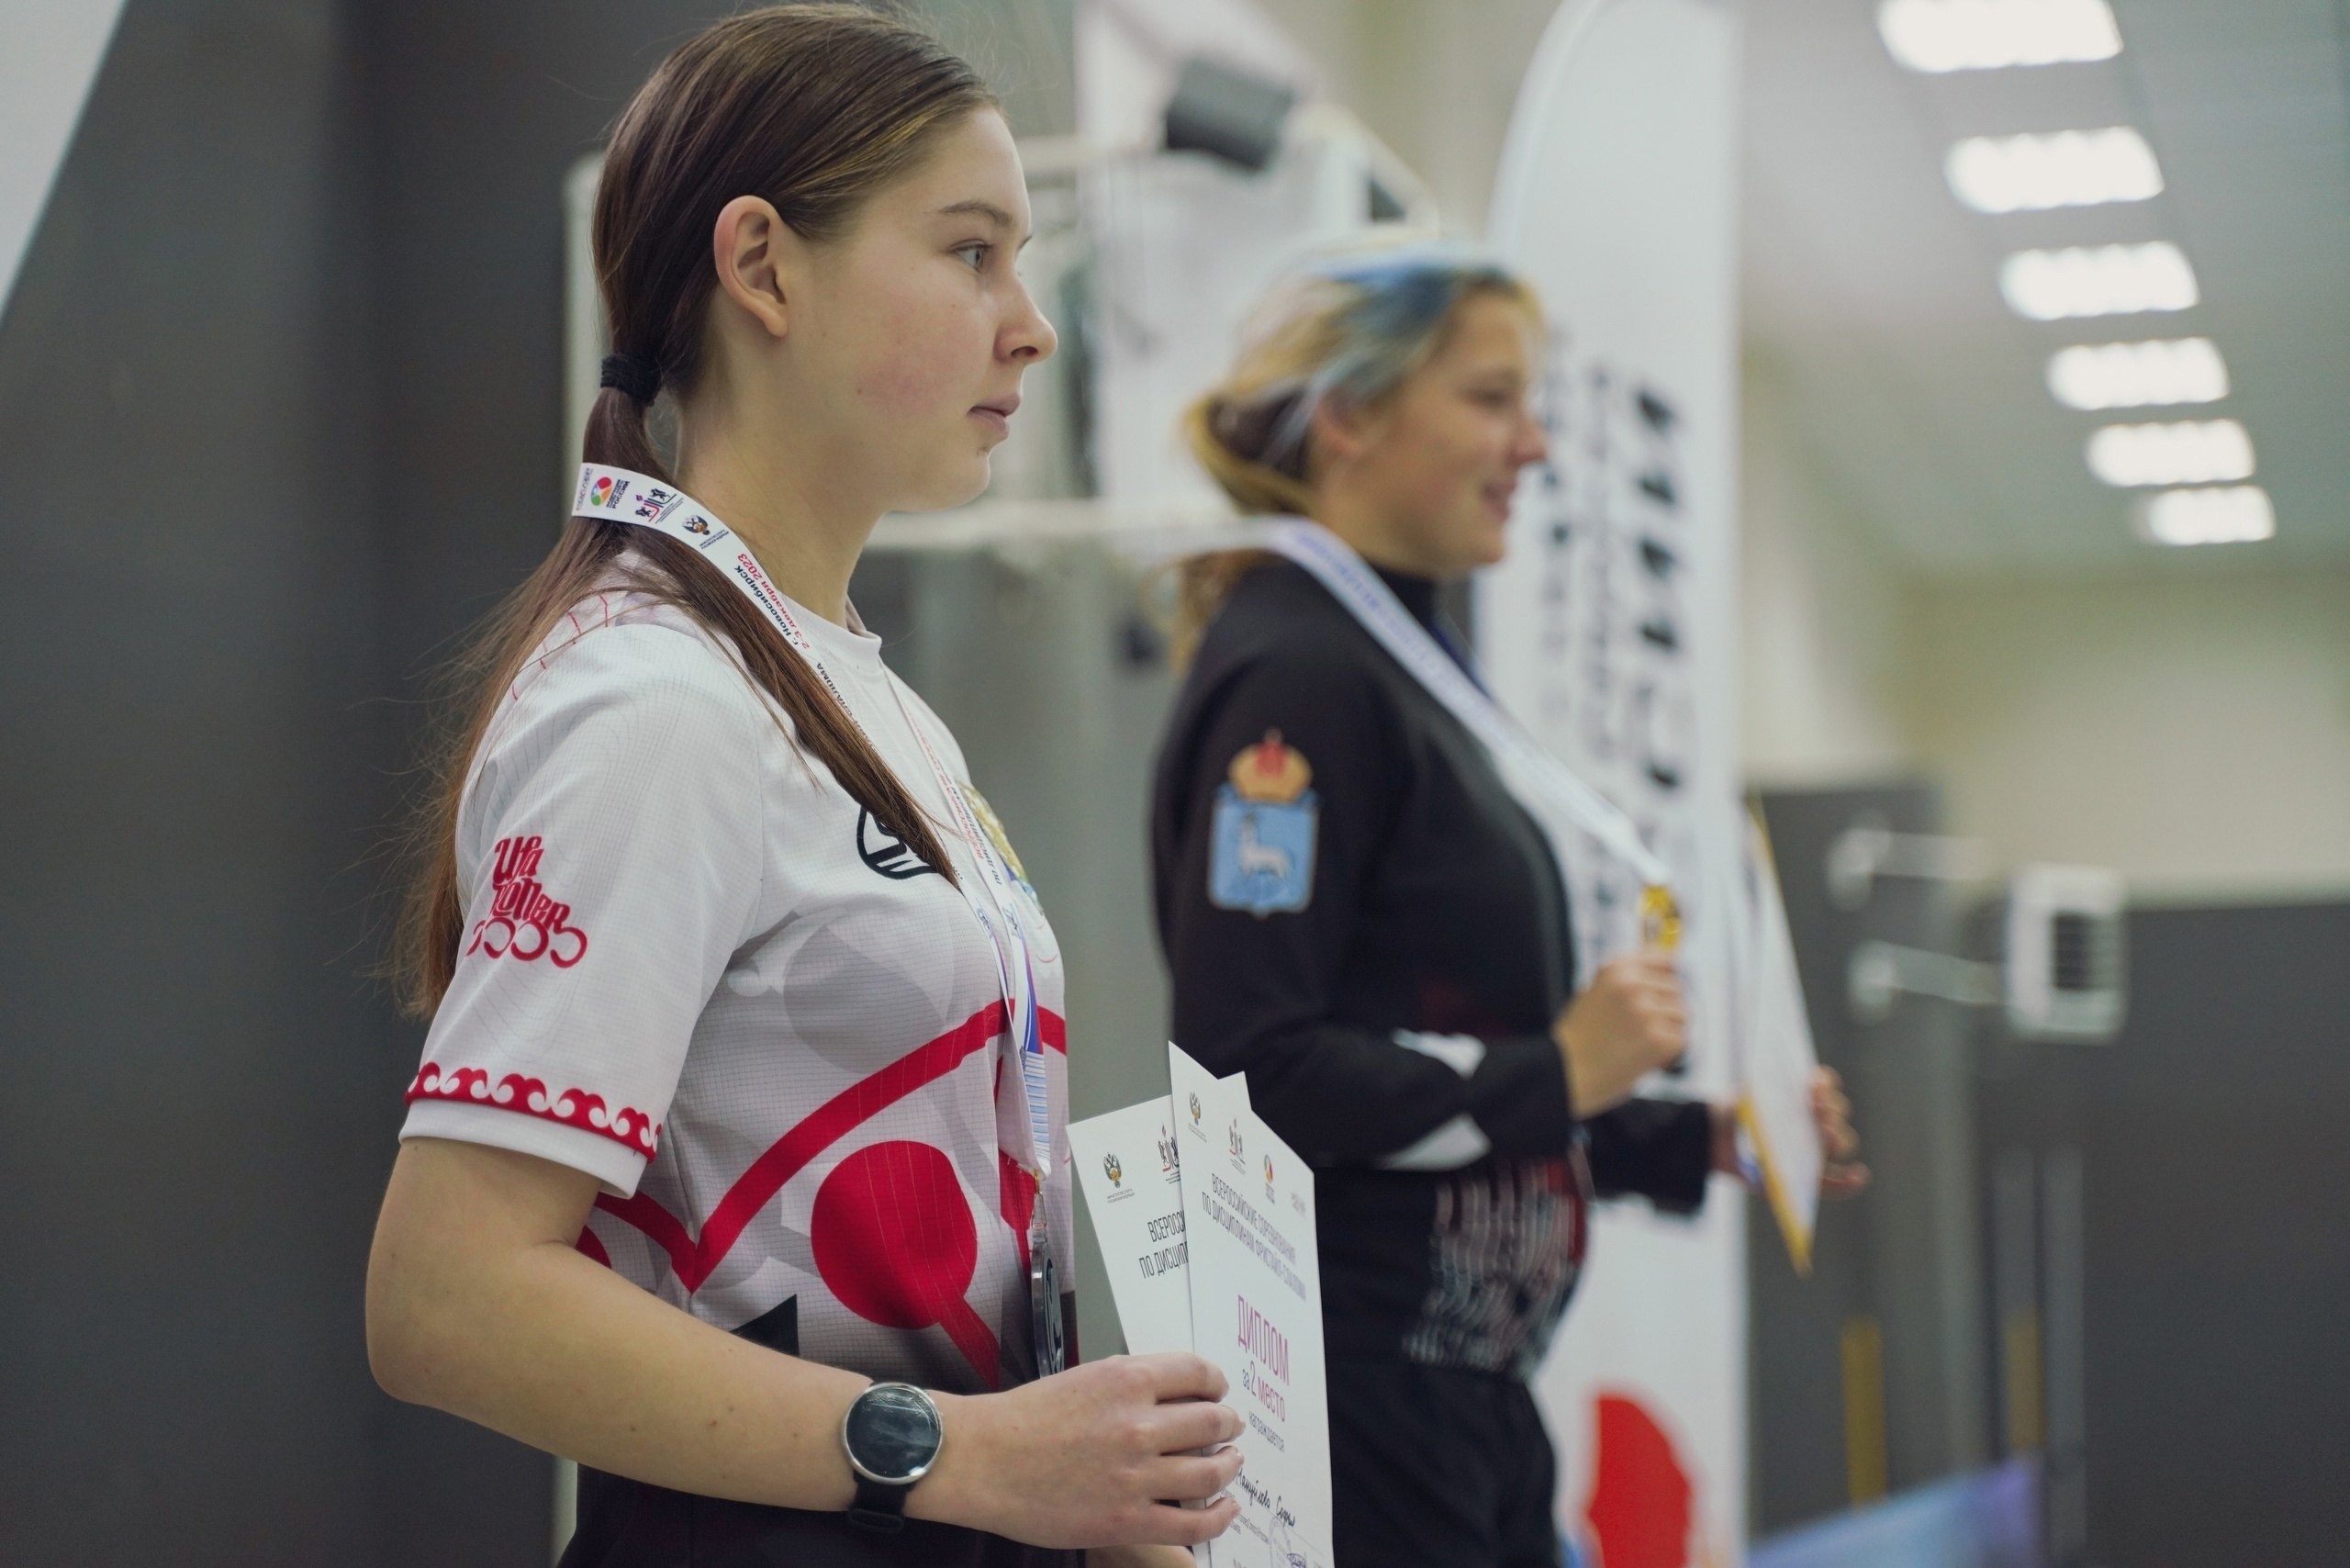 В минувшие выходные, 2-3 декабря, состоялись завершающие соревнования по роллер спорту в этом сезоне — Всероссийские соревнования по дисциплинам фристайл-слалома в г. Новосибирске.